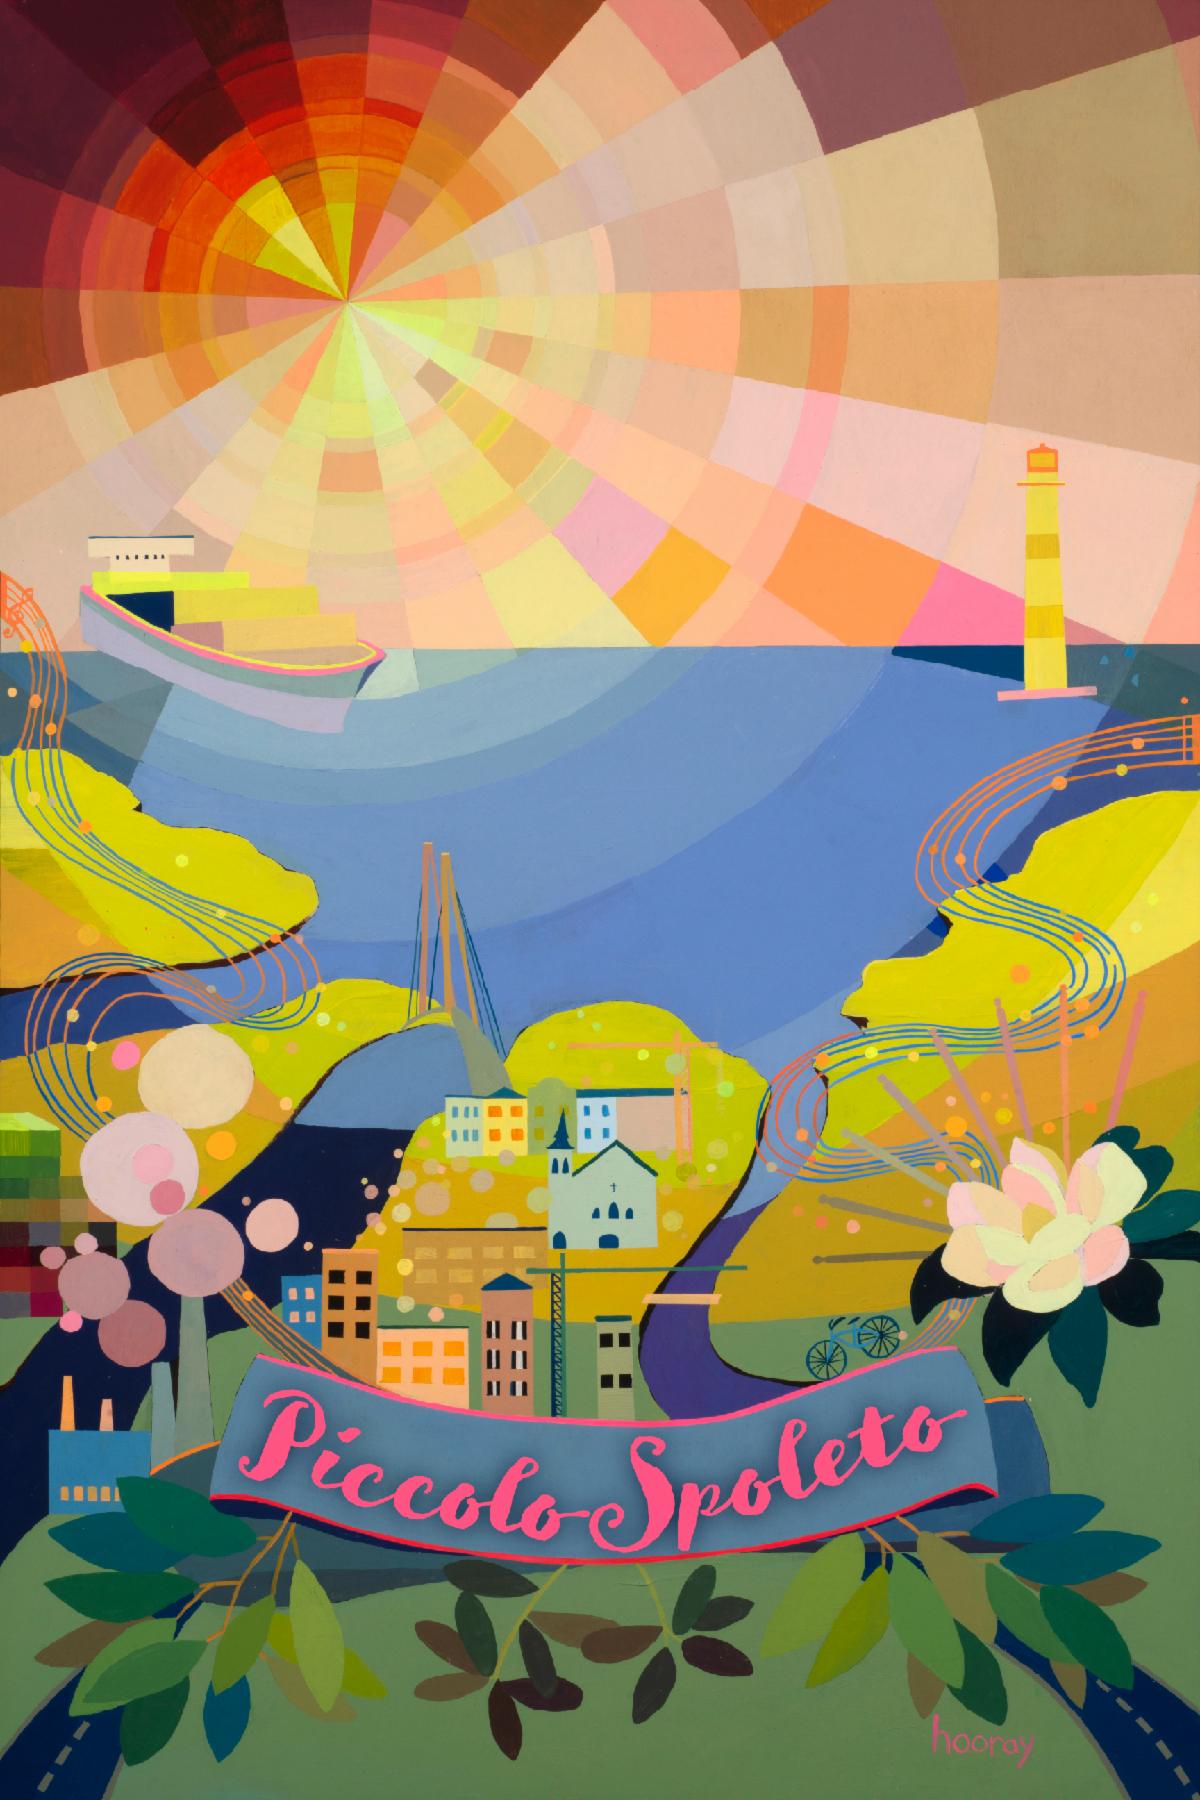 2021 Piccolo Spoleto Festival poster unveiled, advance program guide